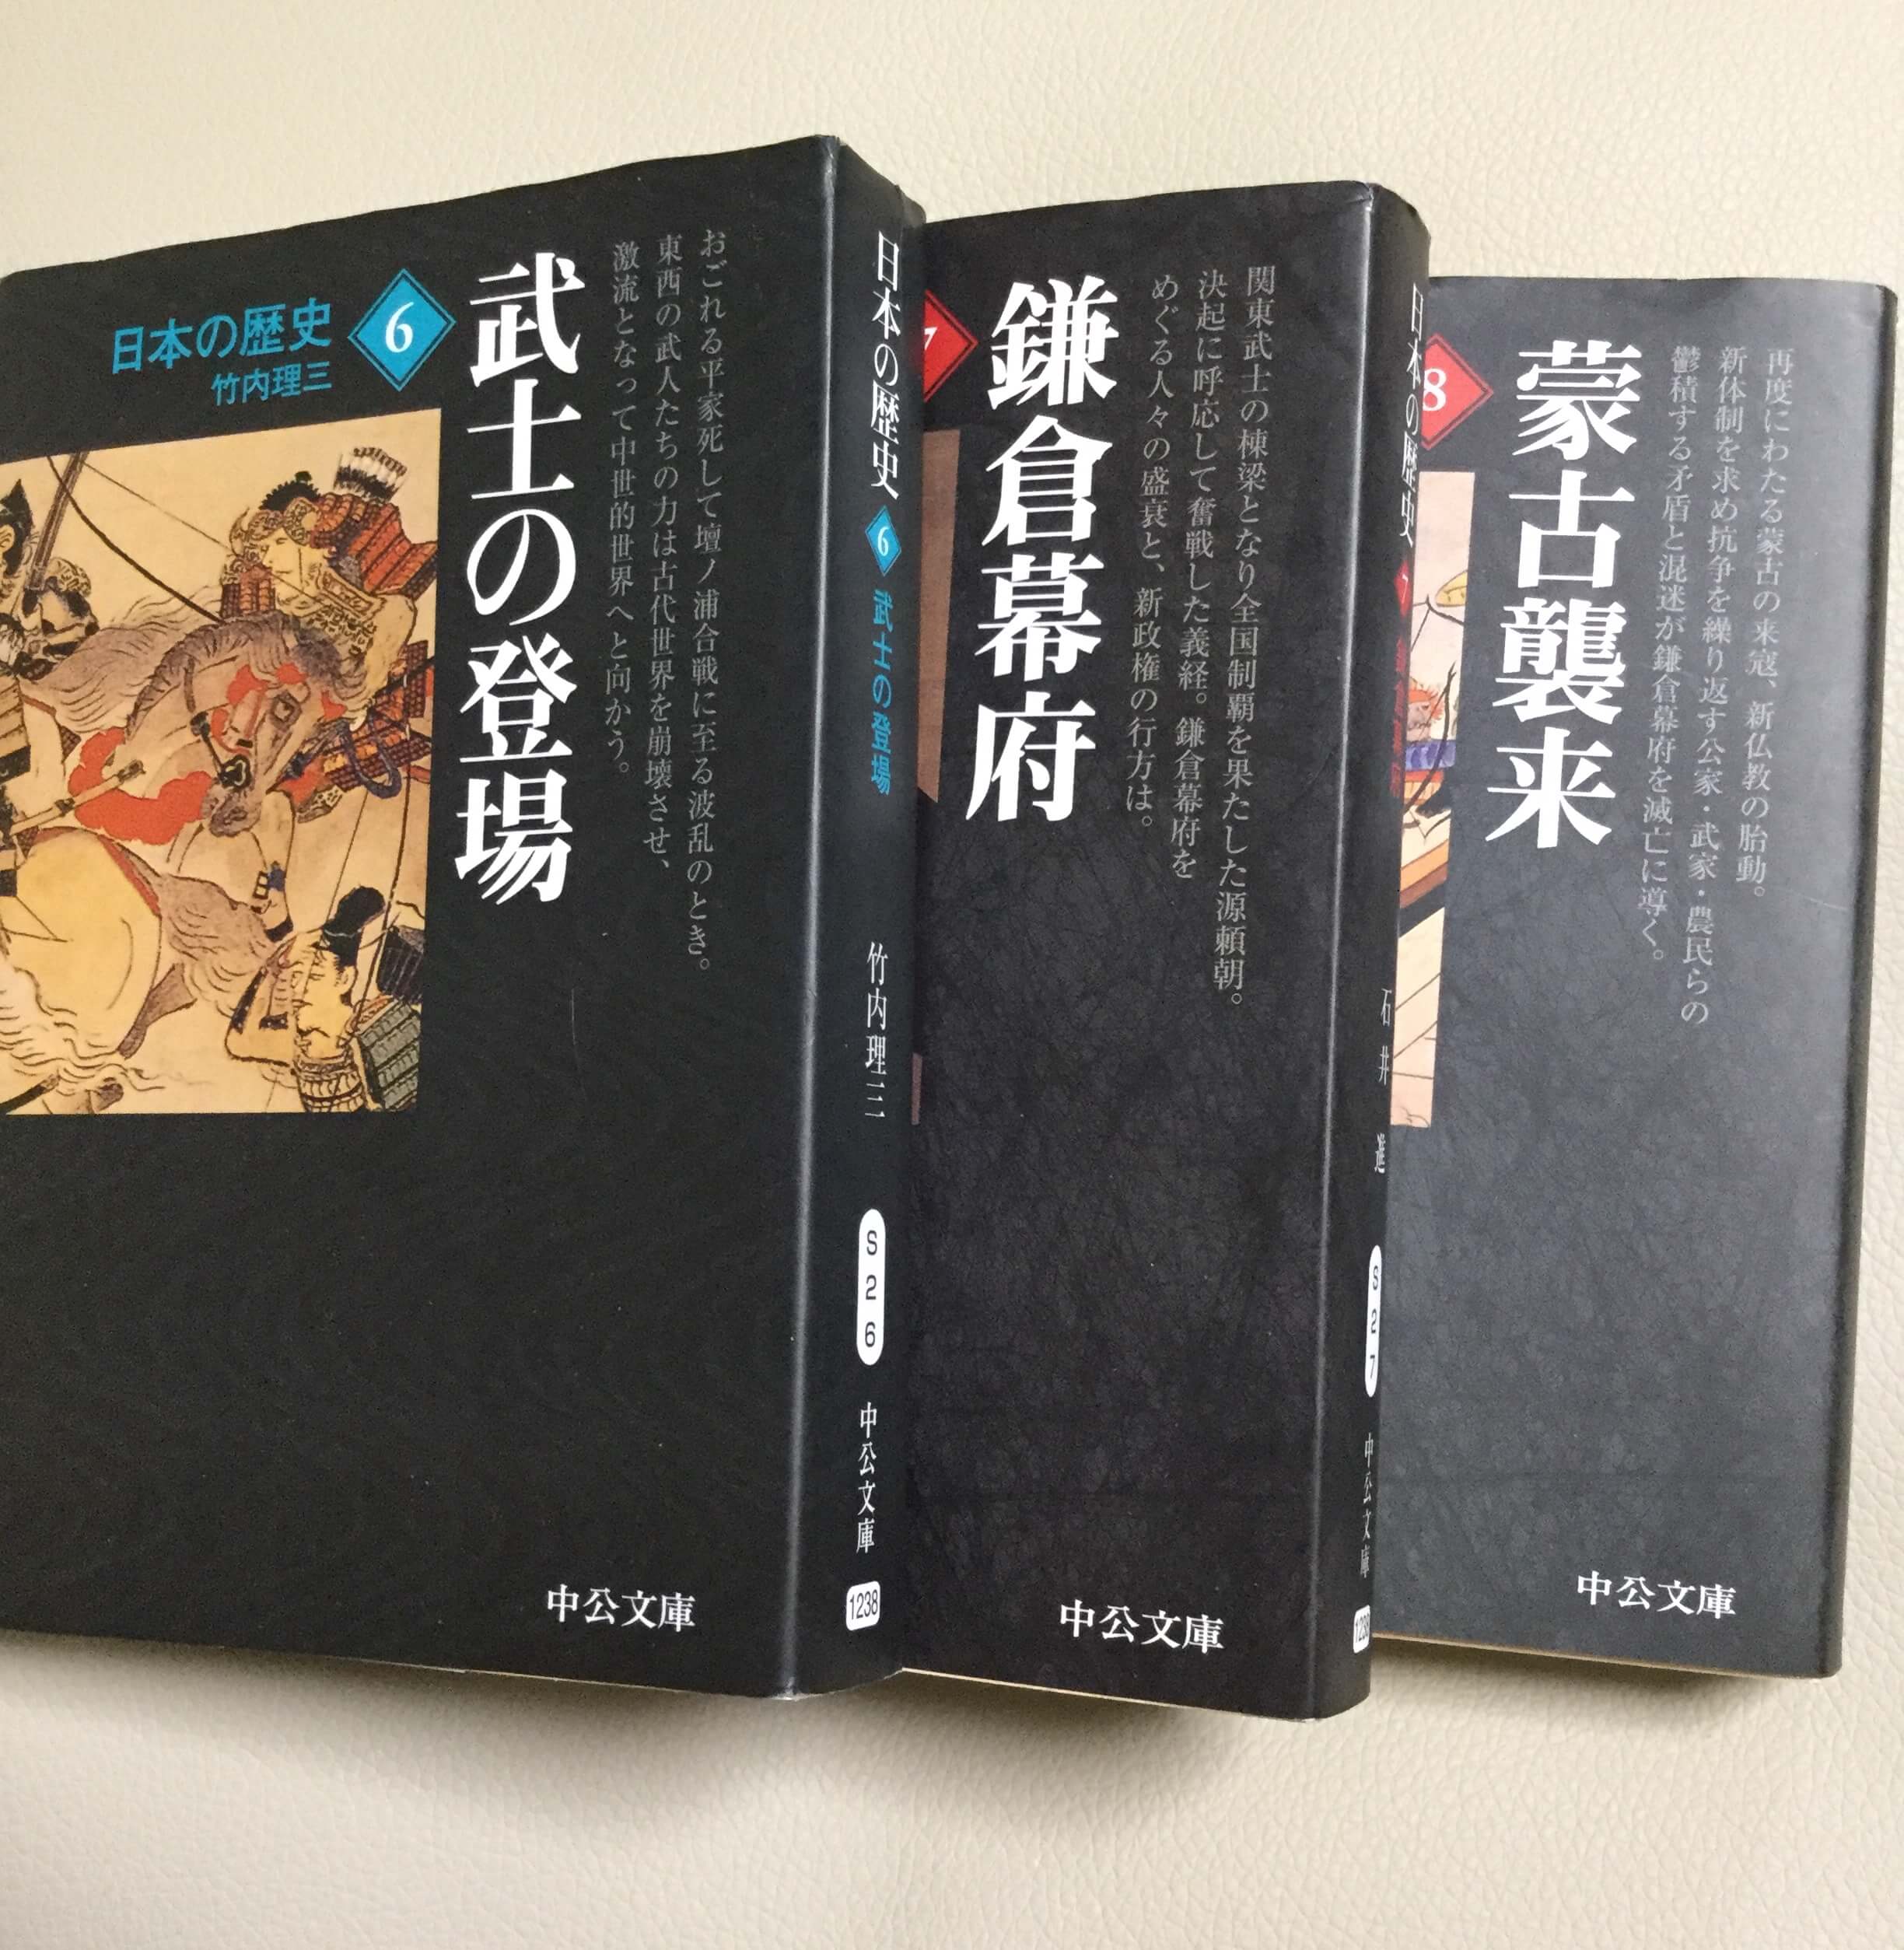 日本史を学ぶならこの本だ 中央公論社 日本の歴史 シリーズがオススメすぎる まなれきドットコム